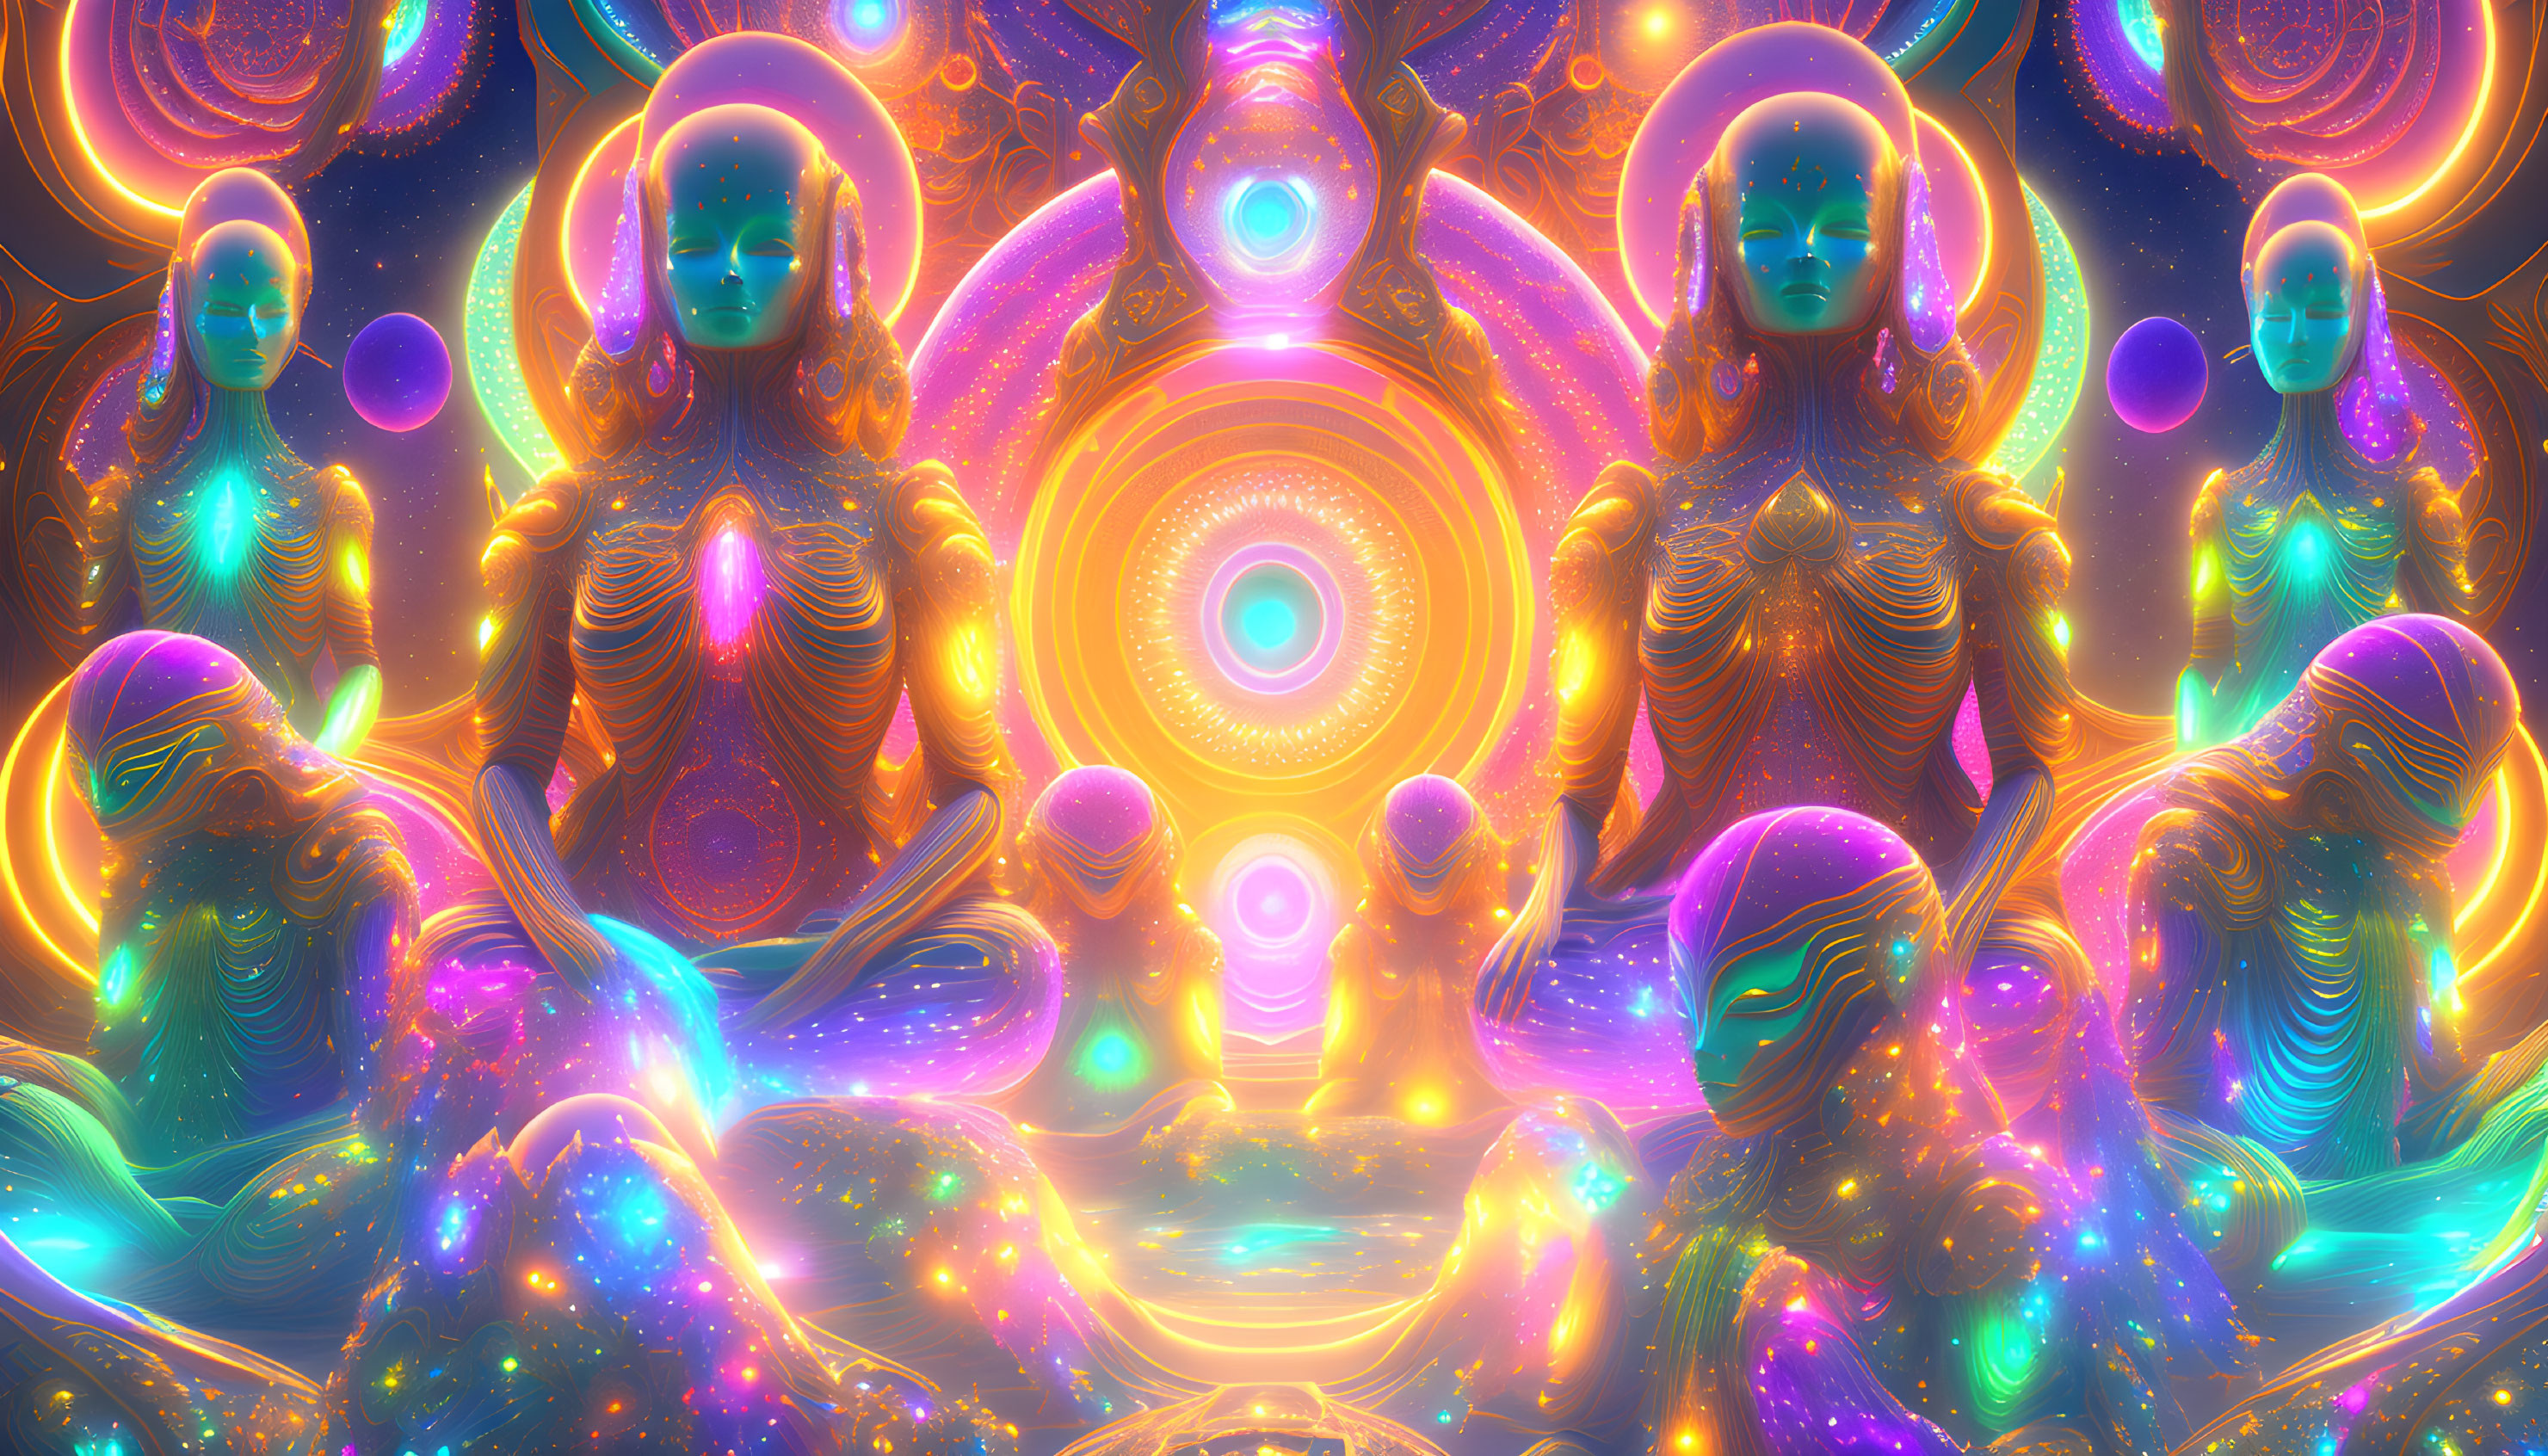 Symmetrical alien-like female figures in vibrant, cosmic digital artwork